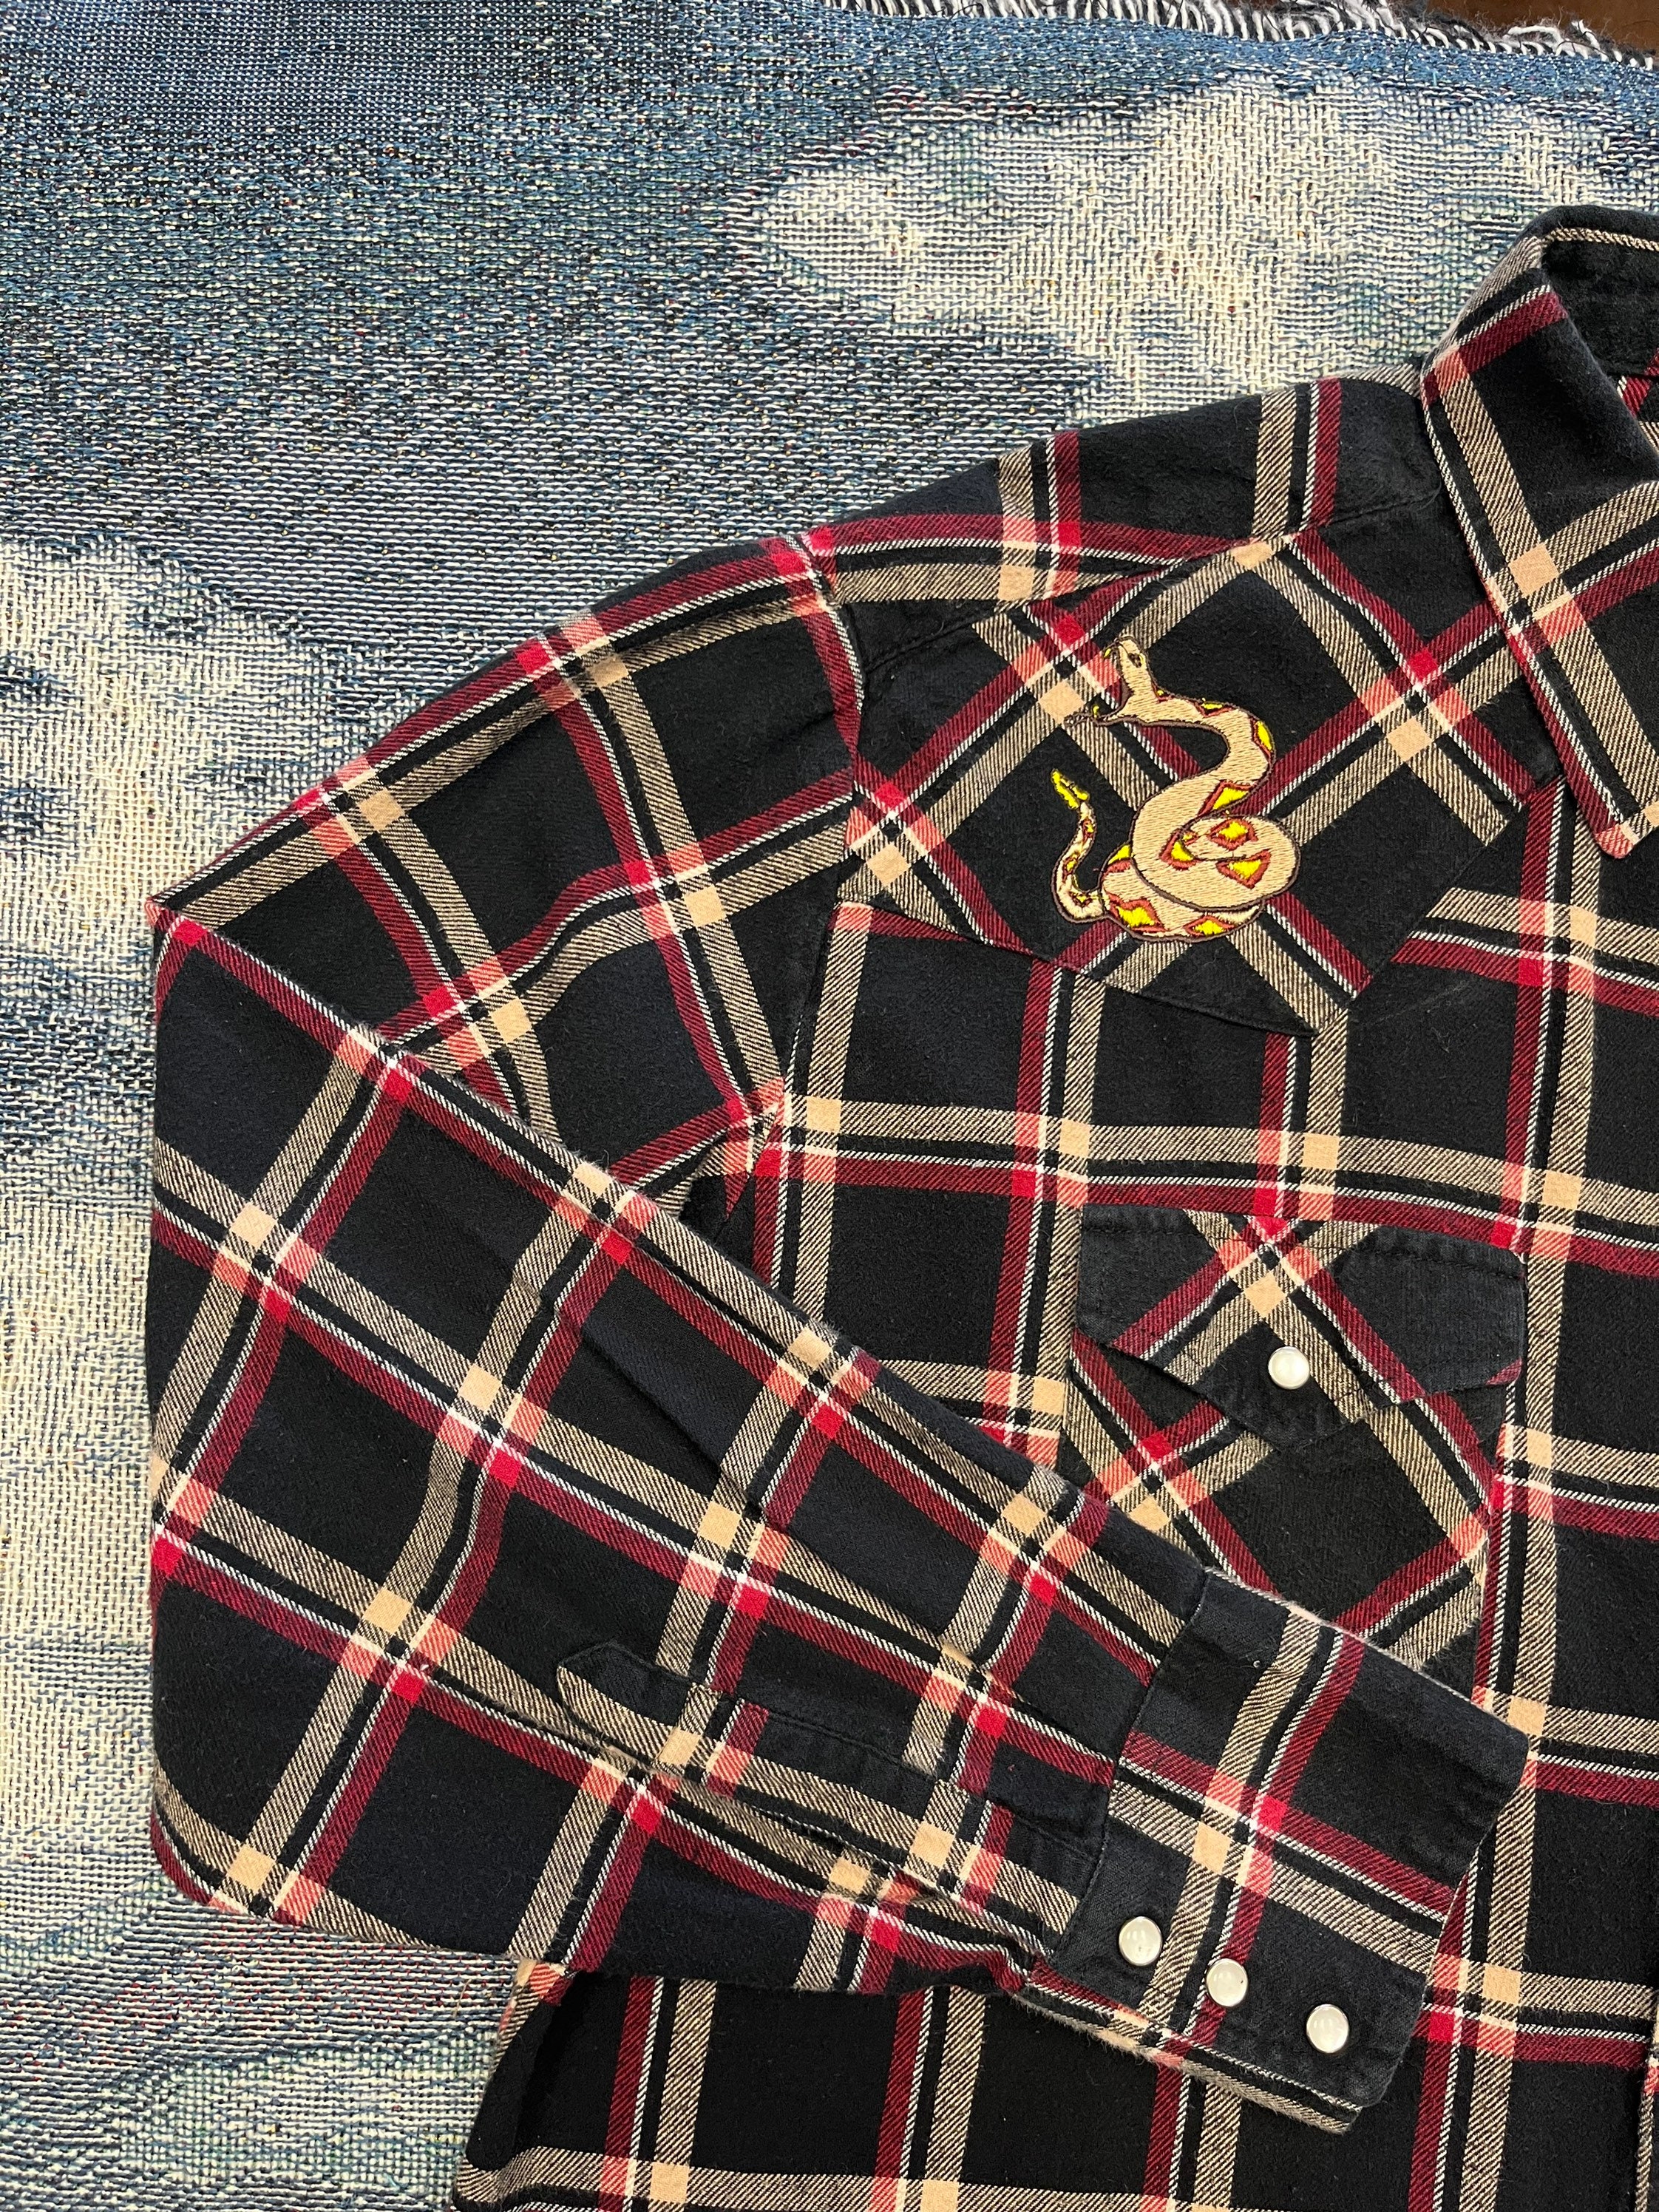 Kleding Herenkleding Overhemden & T-shirts Oxfords & Buttondowns Mens XL Short Sleeve Rattlesnake Embroidered Vintage Western Shirt Rattler Diamondback 